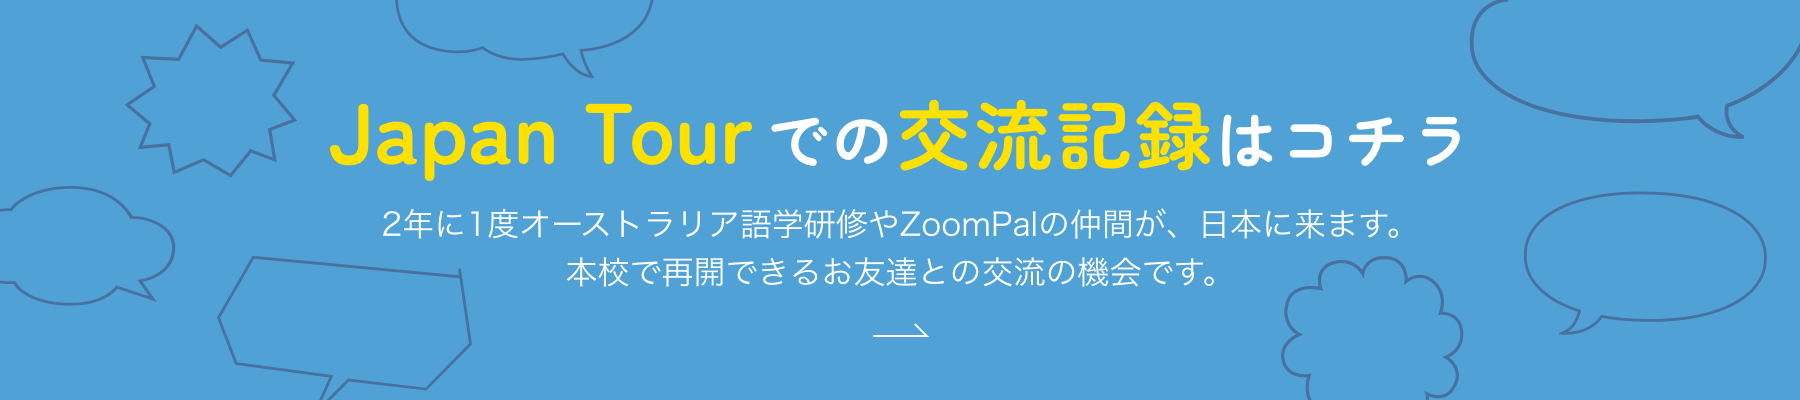 Japan Tourでの交流記録はコチラ 2年に1度オーストラリア語学研修やZoomPalの仲間が、日本に来ます。本校で再開できるお友達との交流の機会です。